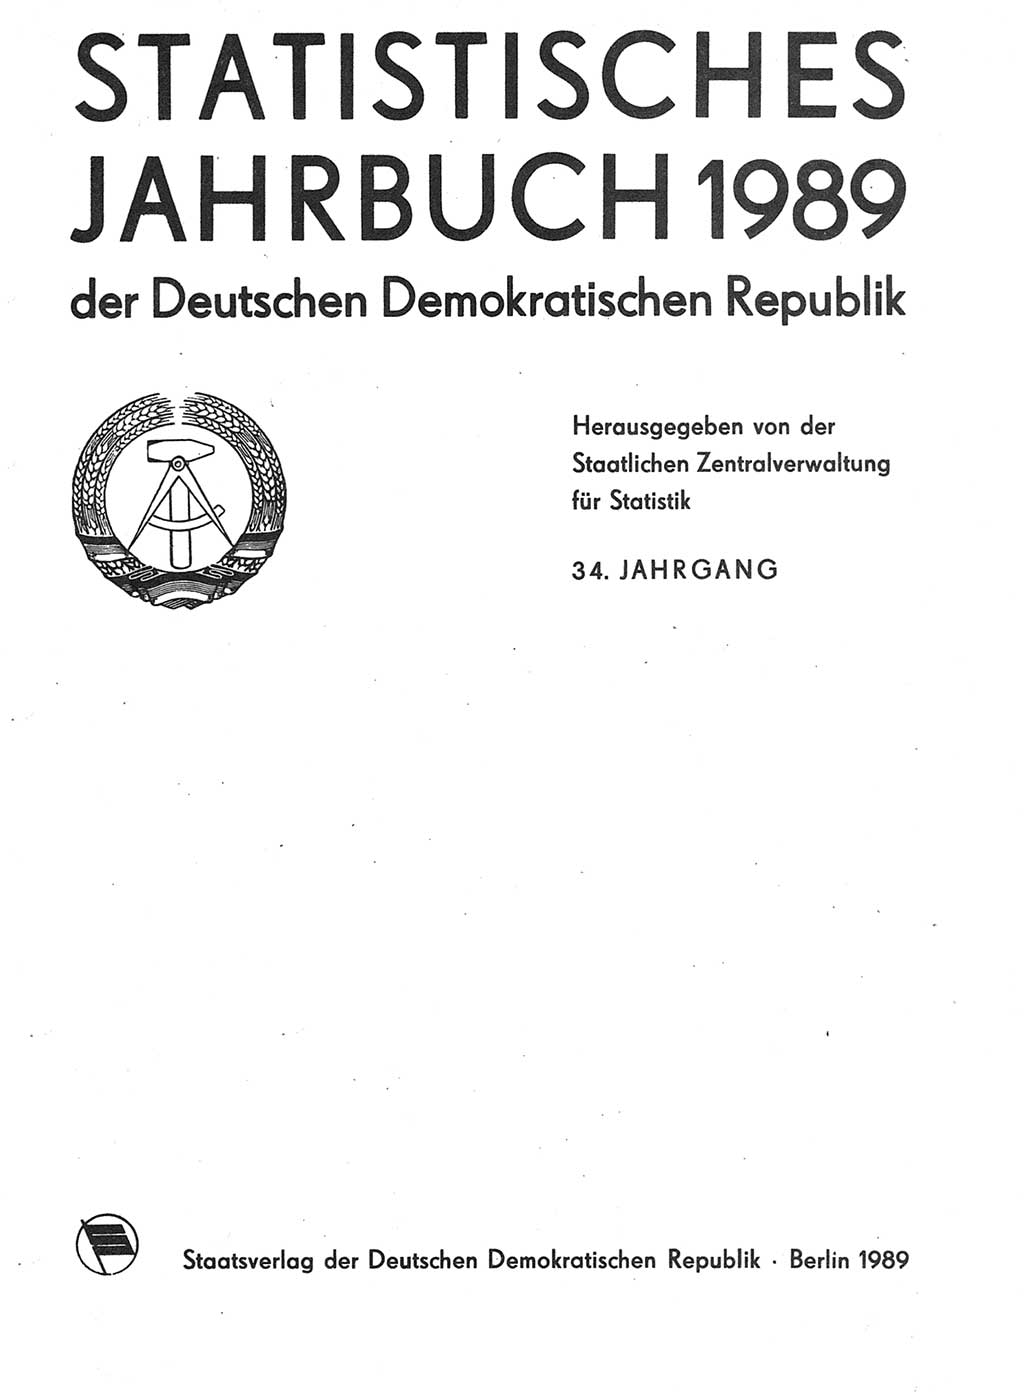 Statistisches Jahrbuch der Deutschen Demokratischen Republik (DDR) 1989, Seite 1 (Stat. Jb. DDR 1989, S. 1)